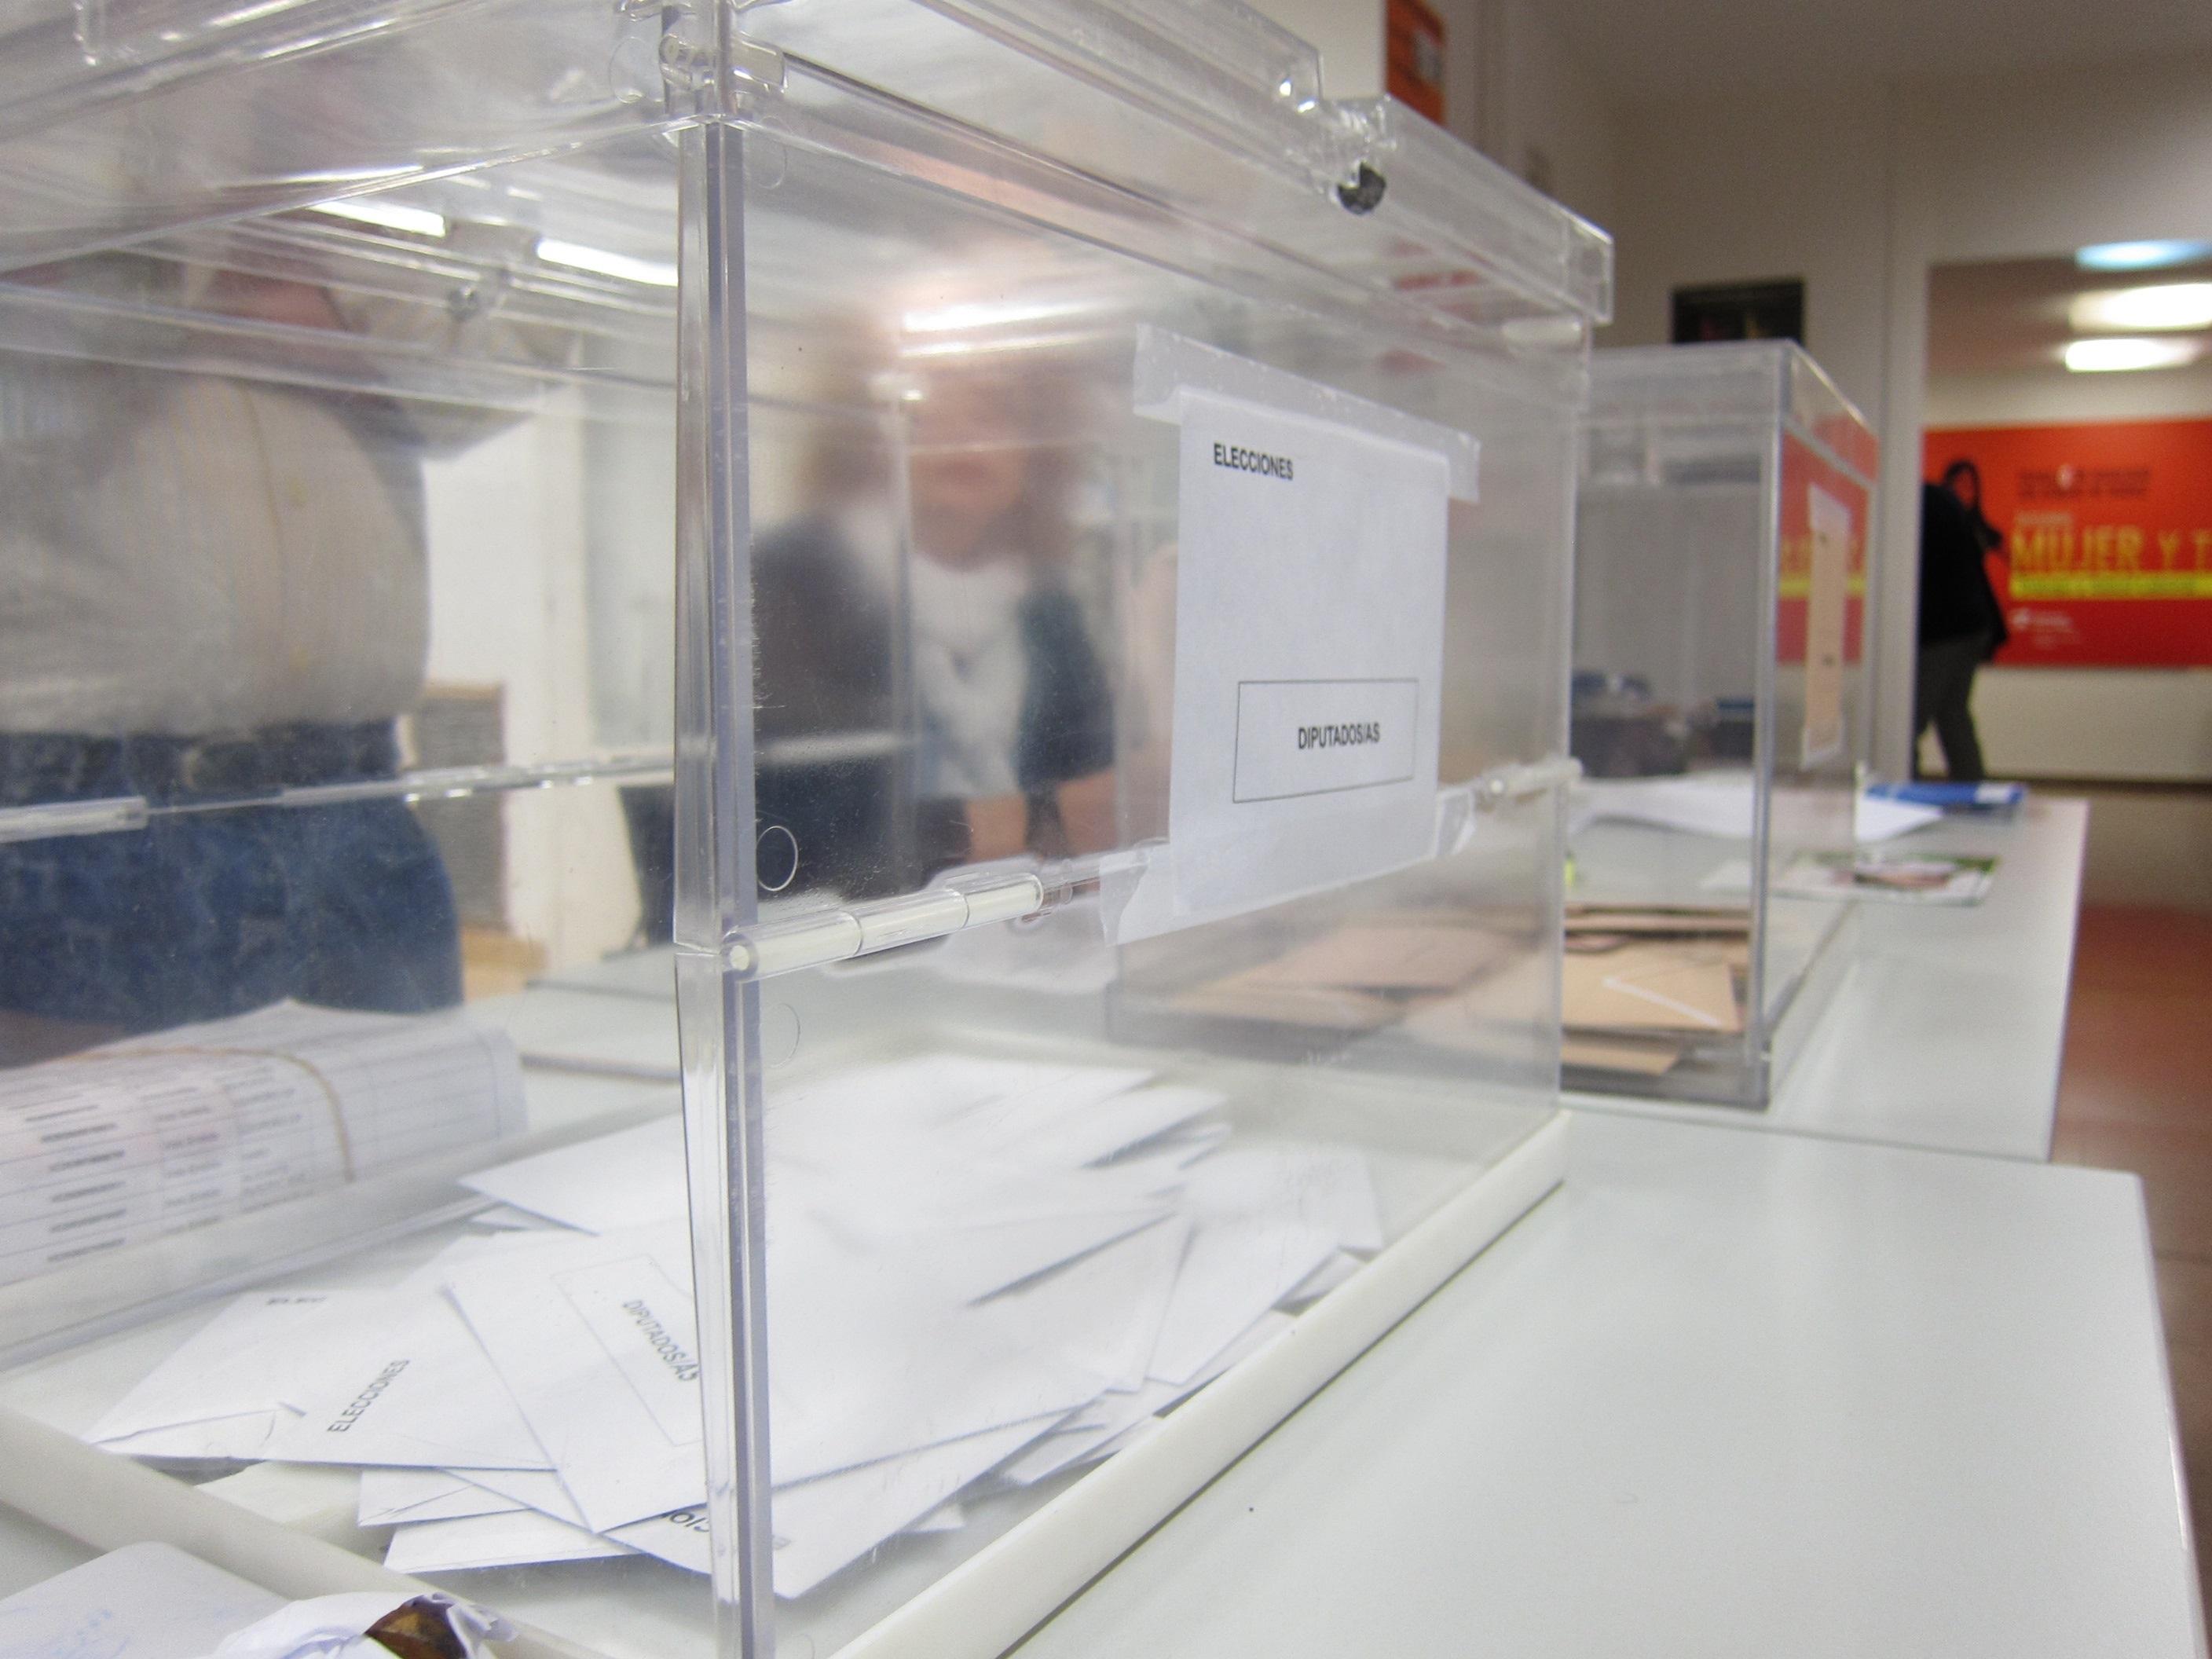 PSOE, PP, Vox, Cs y PNV rechazan rebajar a los 16 años la edad para votar. En la imagen, votos en una urna. Fuente: EP.